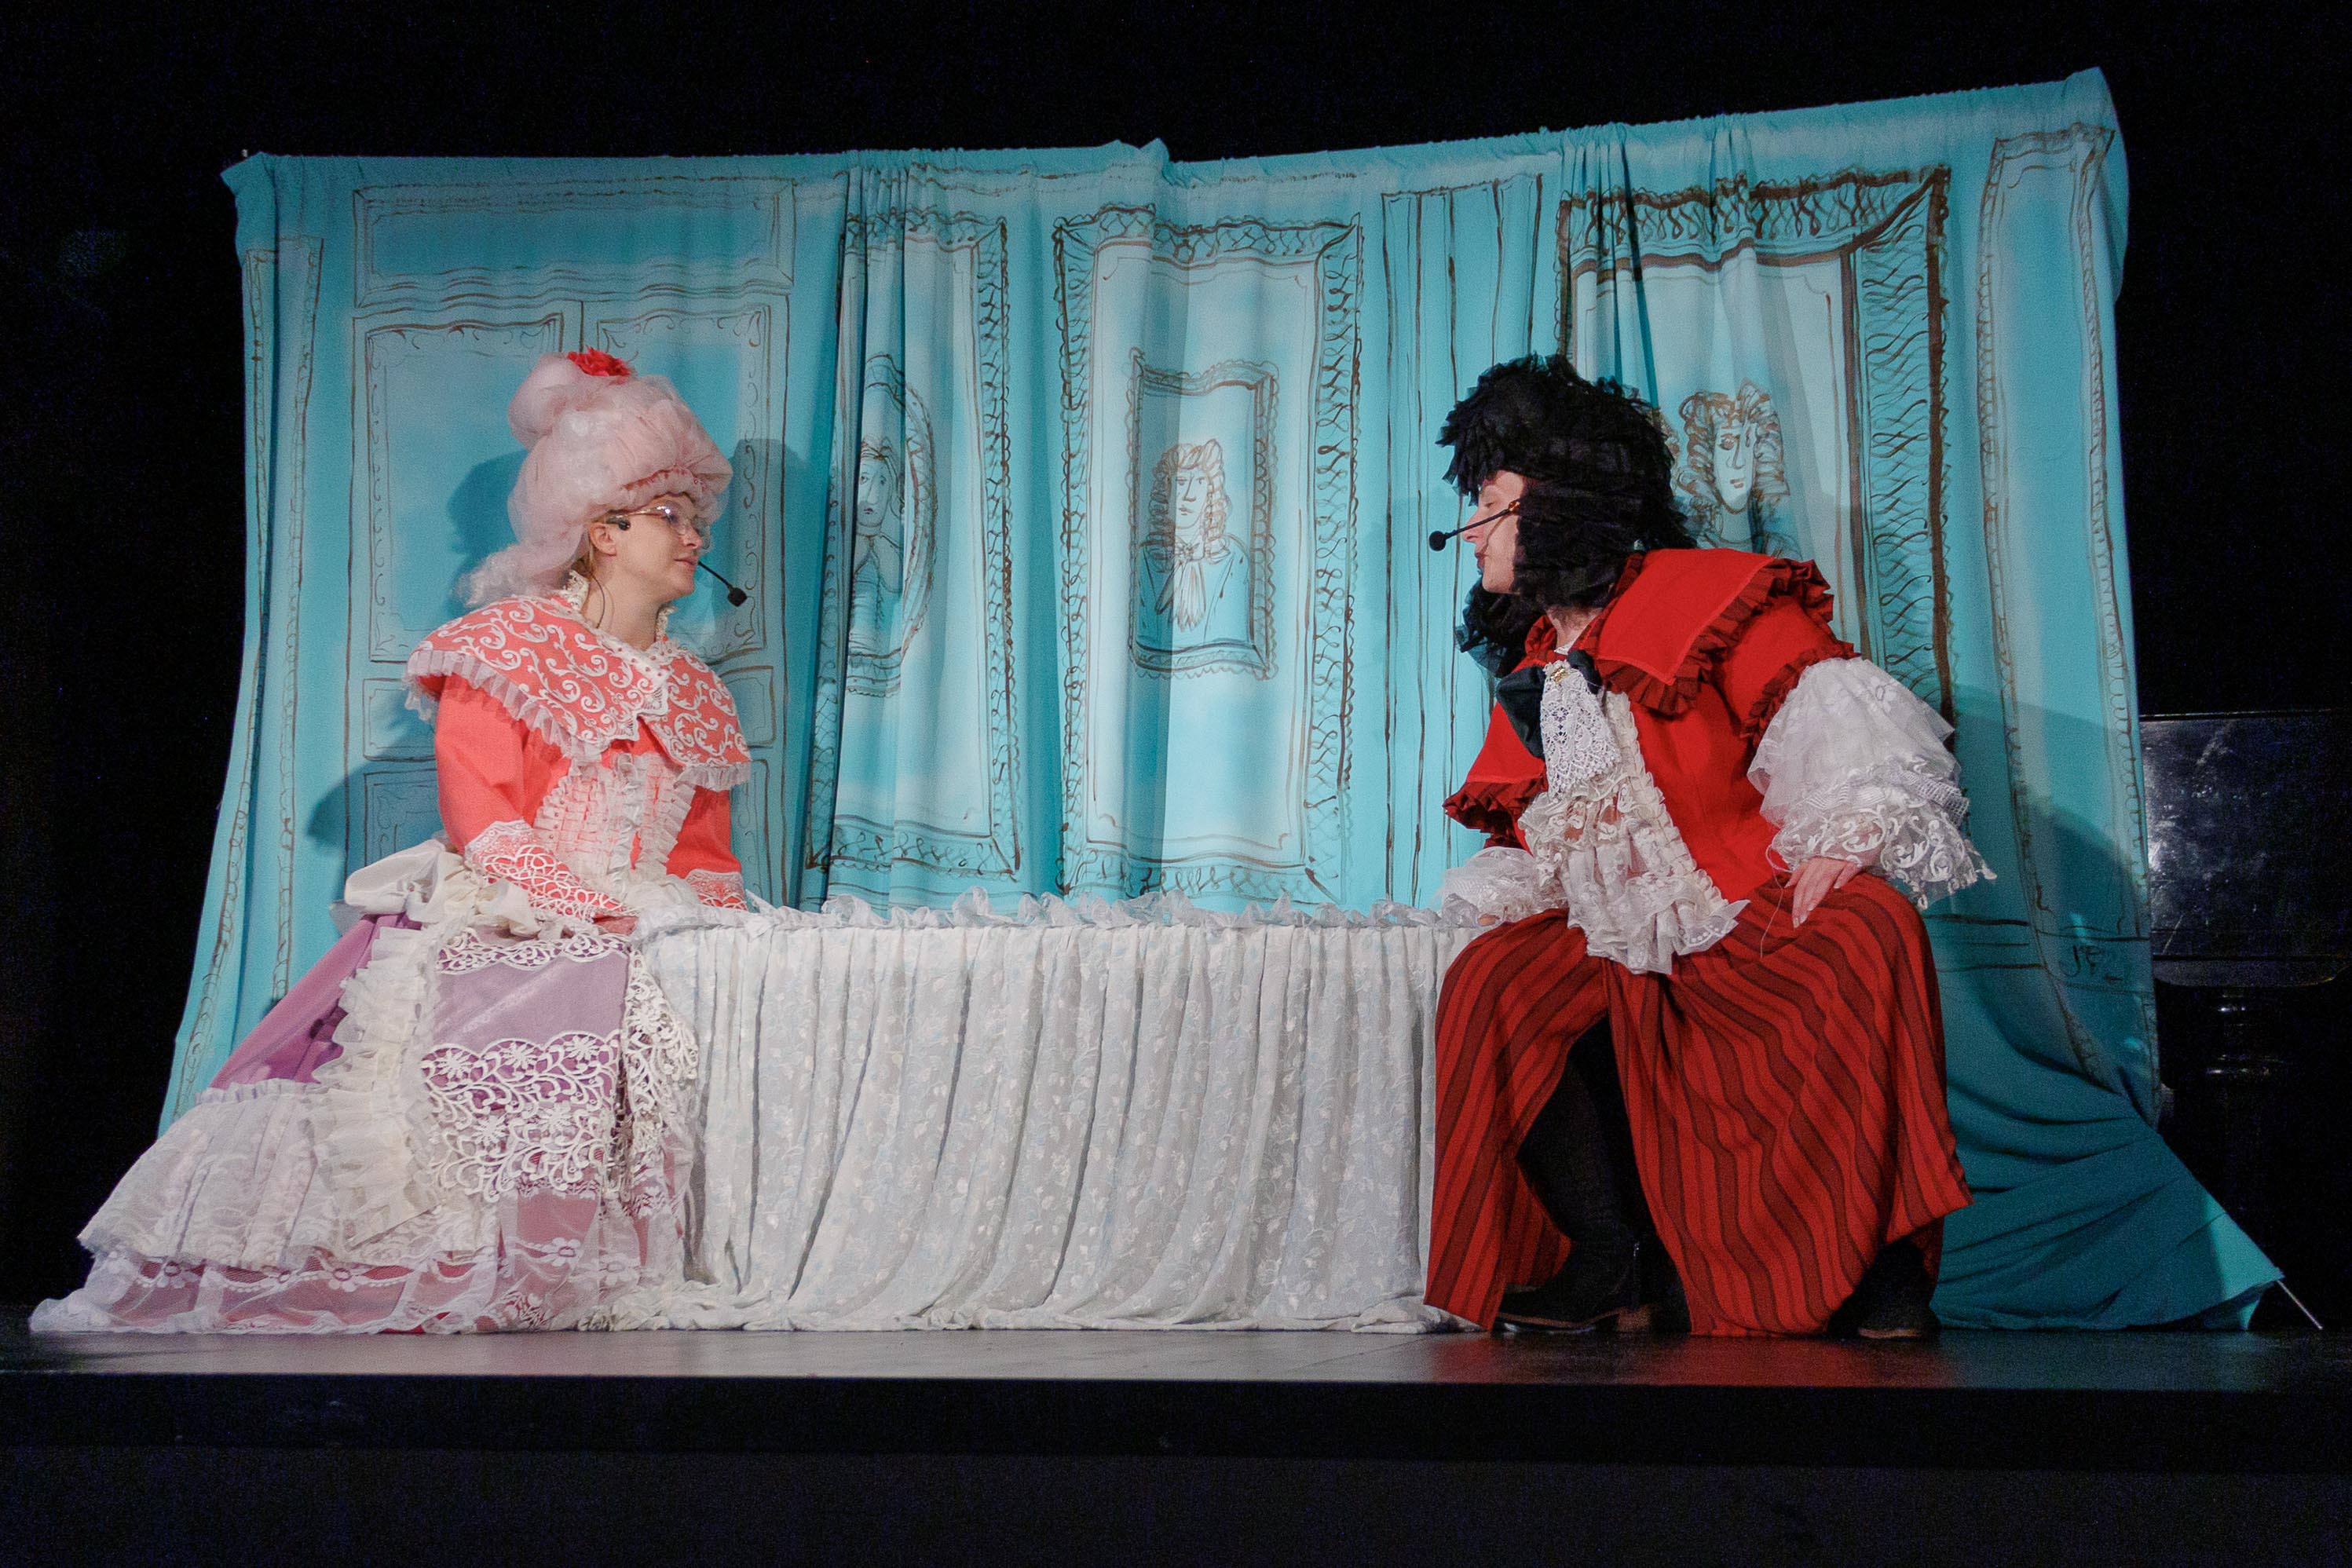 Na scenie widać dwie osoby, ubrane w ozdobne, barokowe stroje i peruki